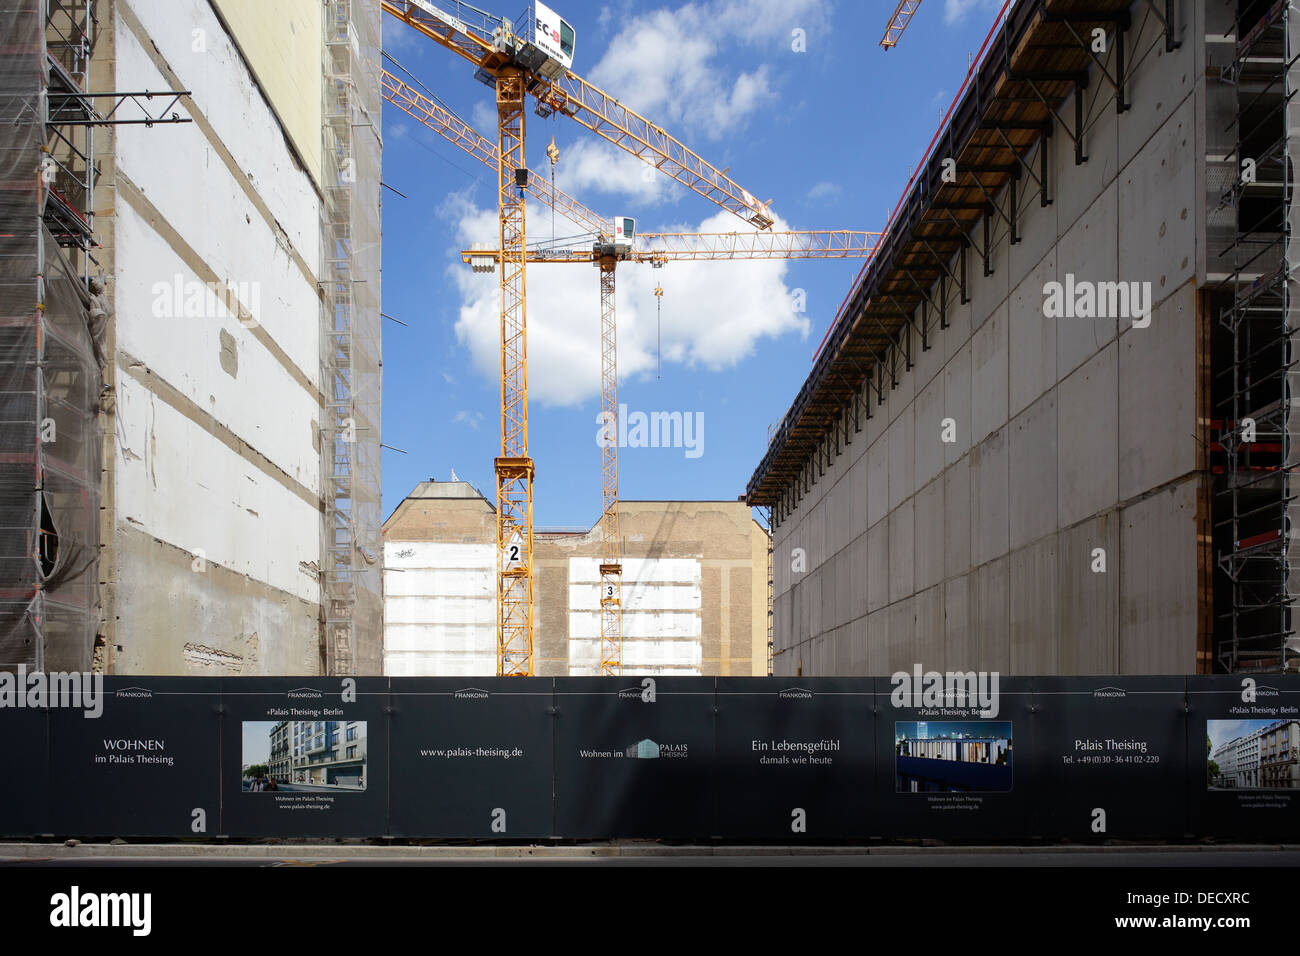 Berlino, Germania, il nuovo progetto di costruzione presso il Palais Theising Glinka Street Foto Stock